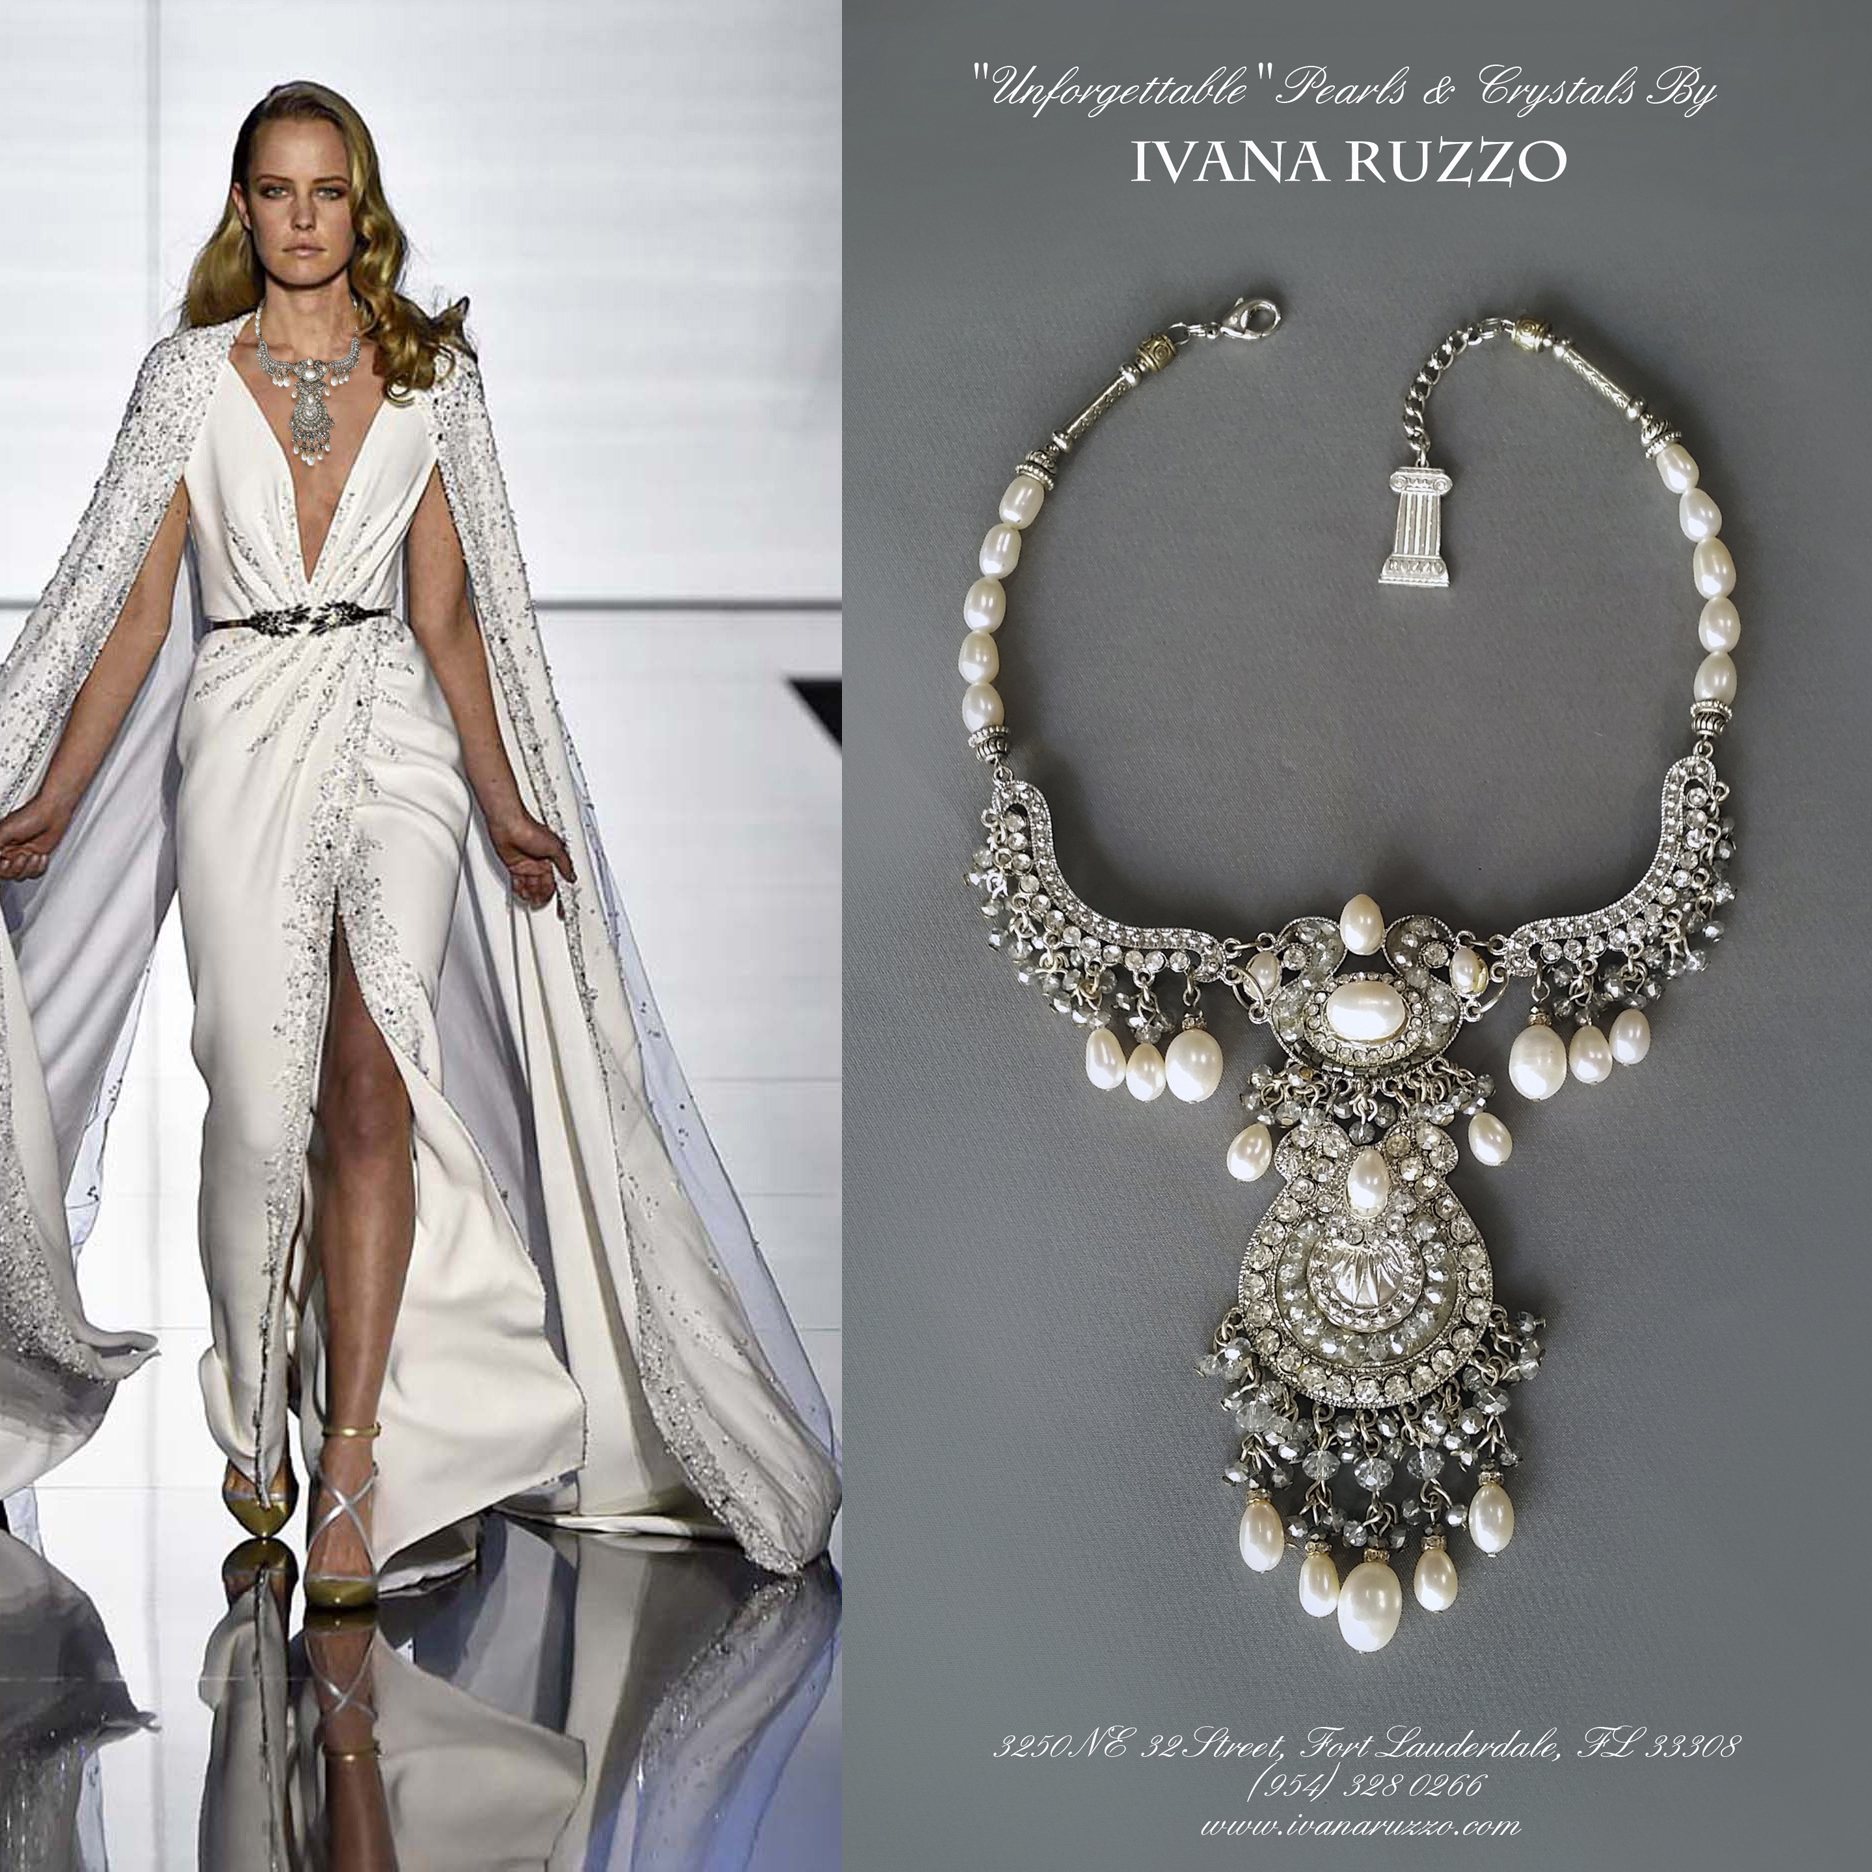 Ivana Ruzzo Design & Fashion